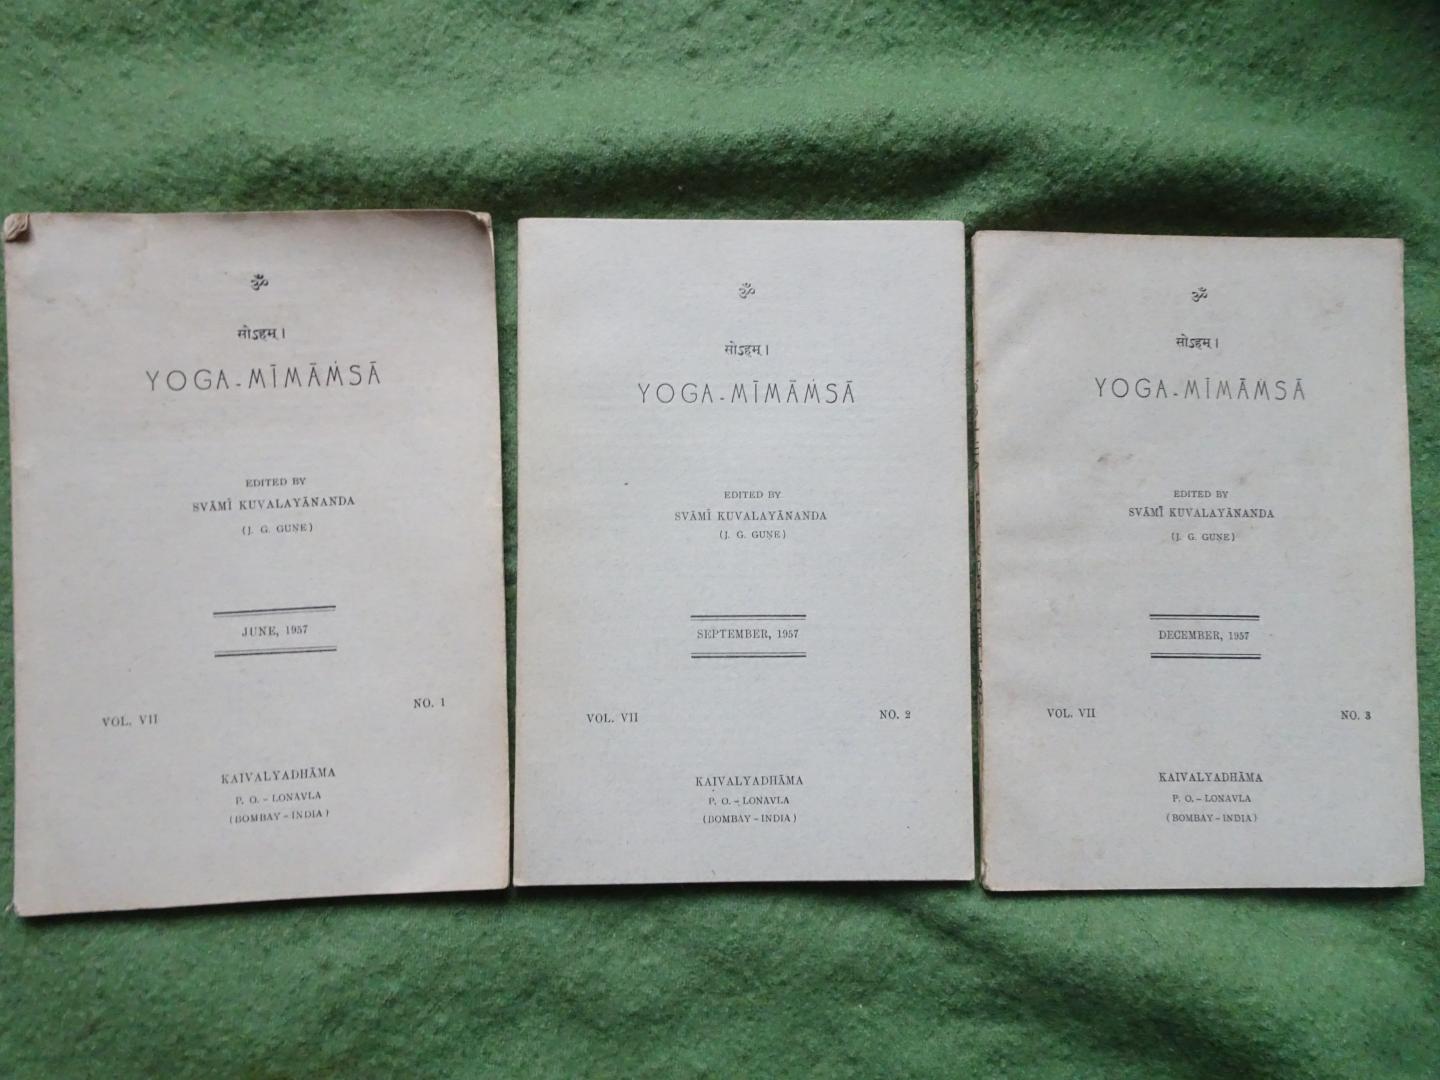 Svami Kuvalayananda (j.g. gUNE) - YOGA-MIMAMSA Vol. VII no 1, 2 and 3